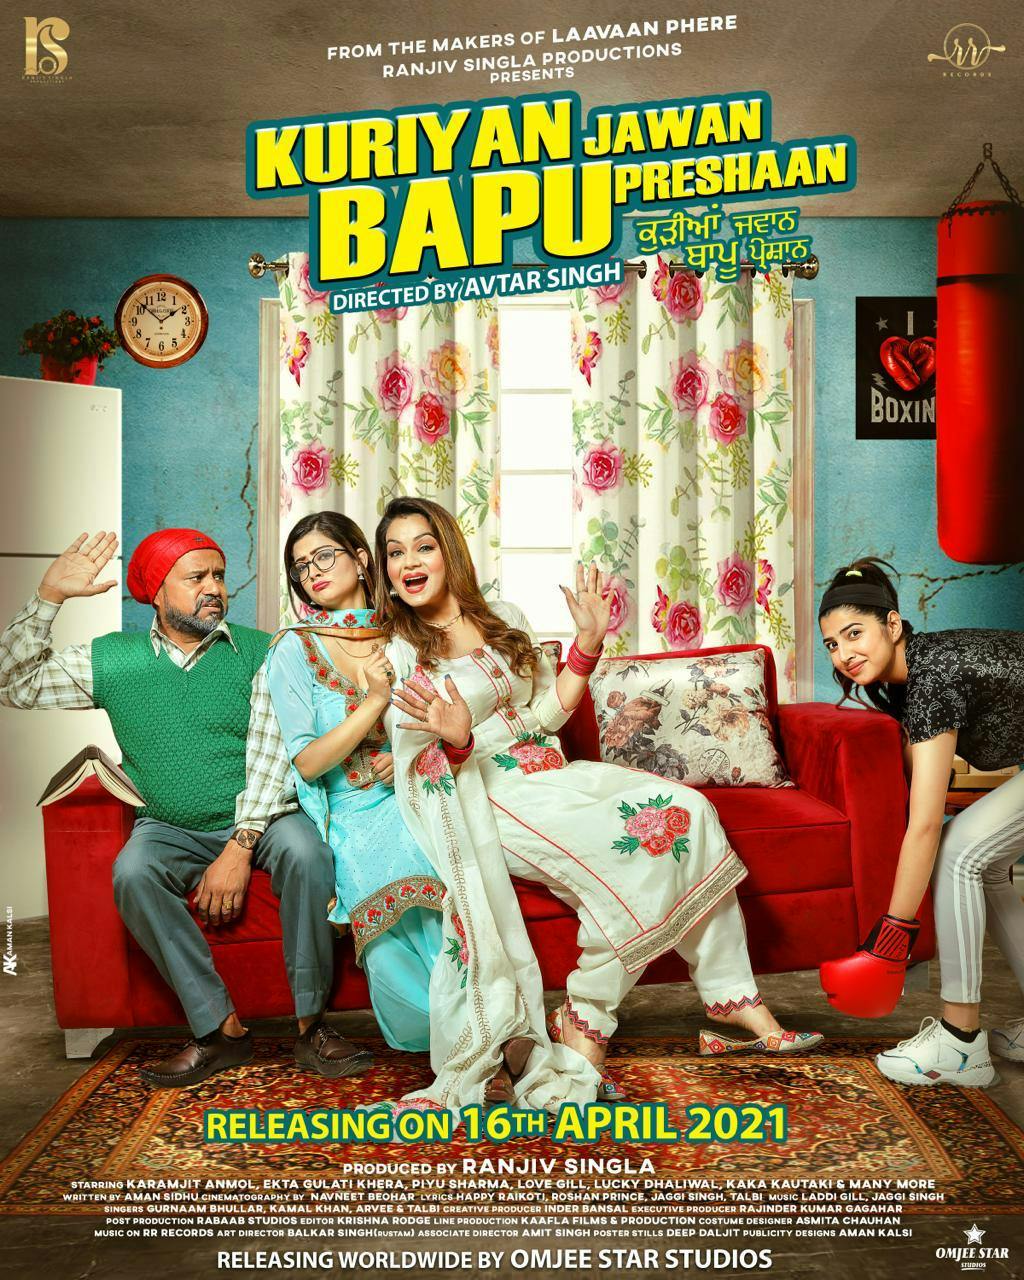 Kuriyan Jawan Bapu Preshaan: A Refreshing Punjabi Movie with a Powerful Message punjabi poster